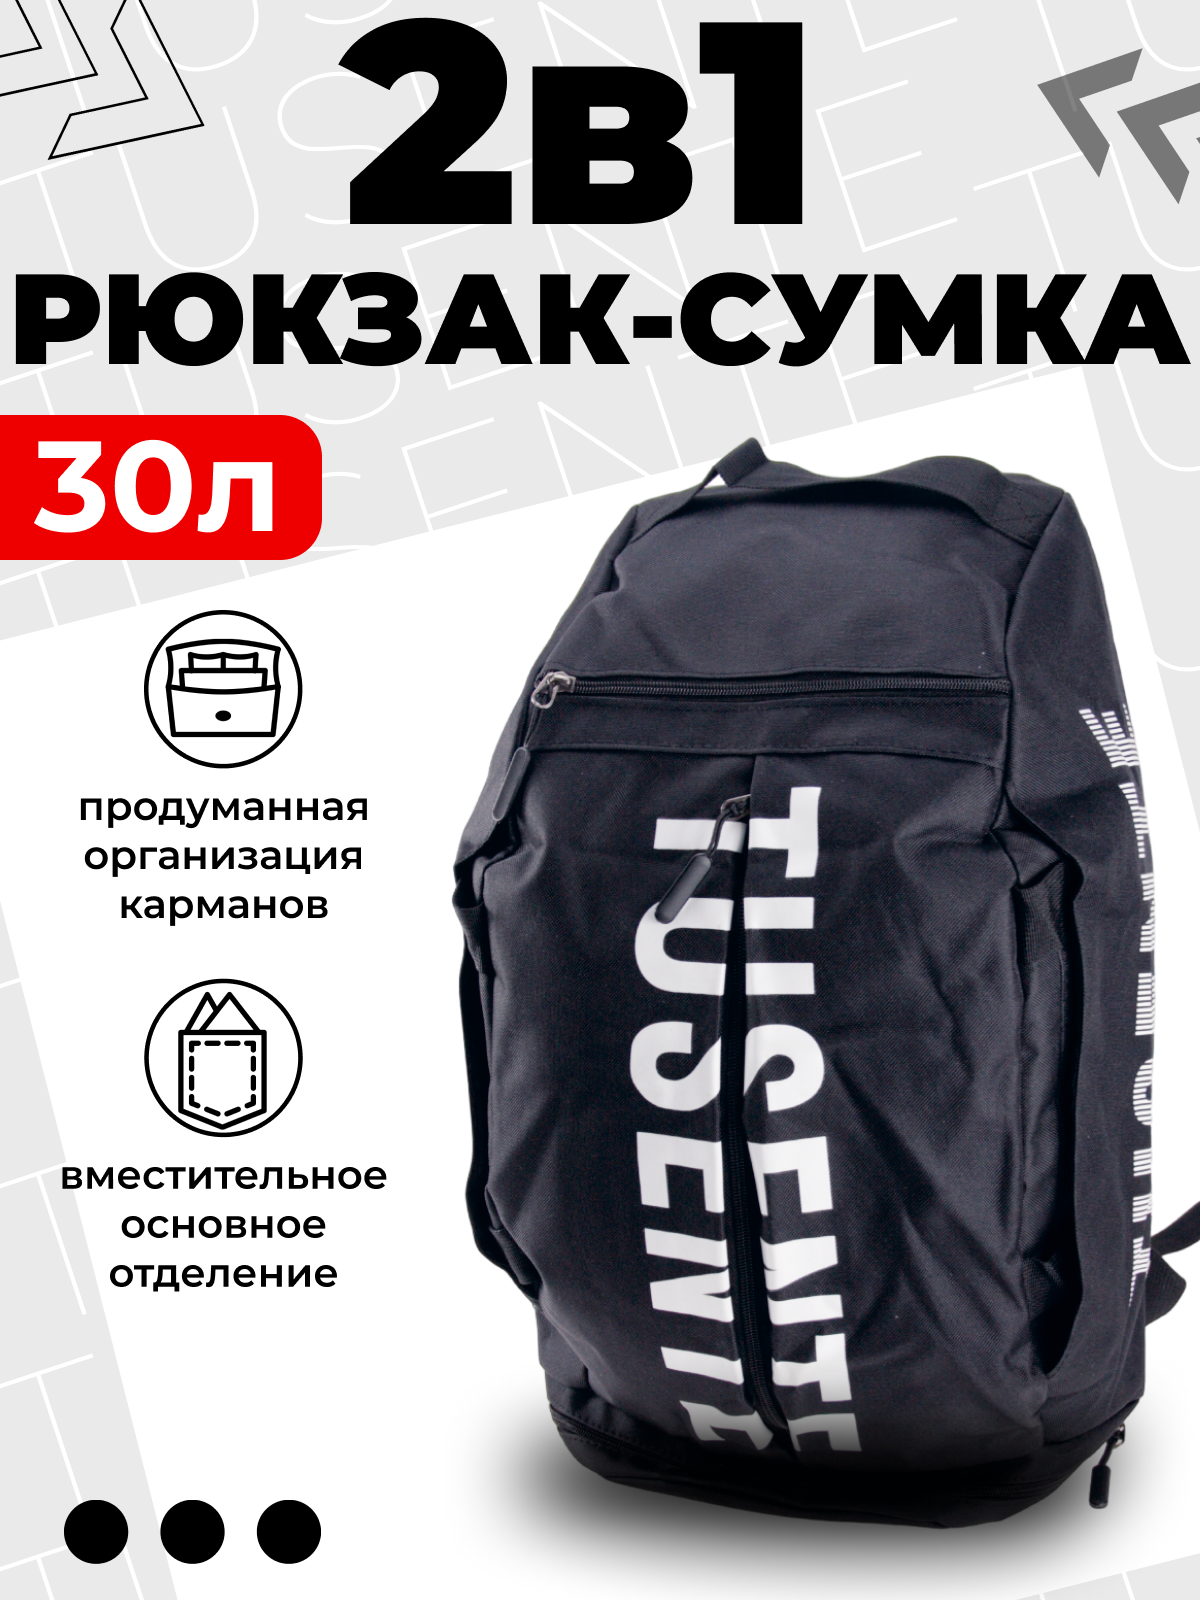 Сумка спортивная, рюкзак трансформер , объём 30 литров, цвет черный